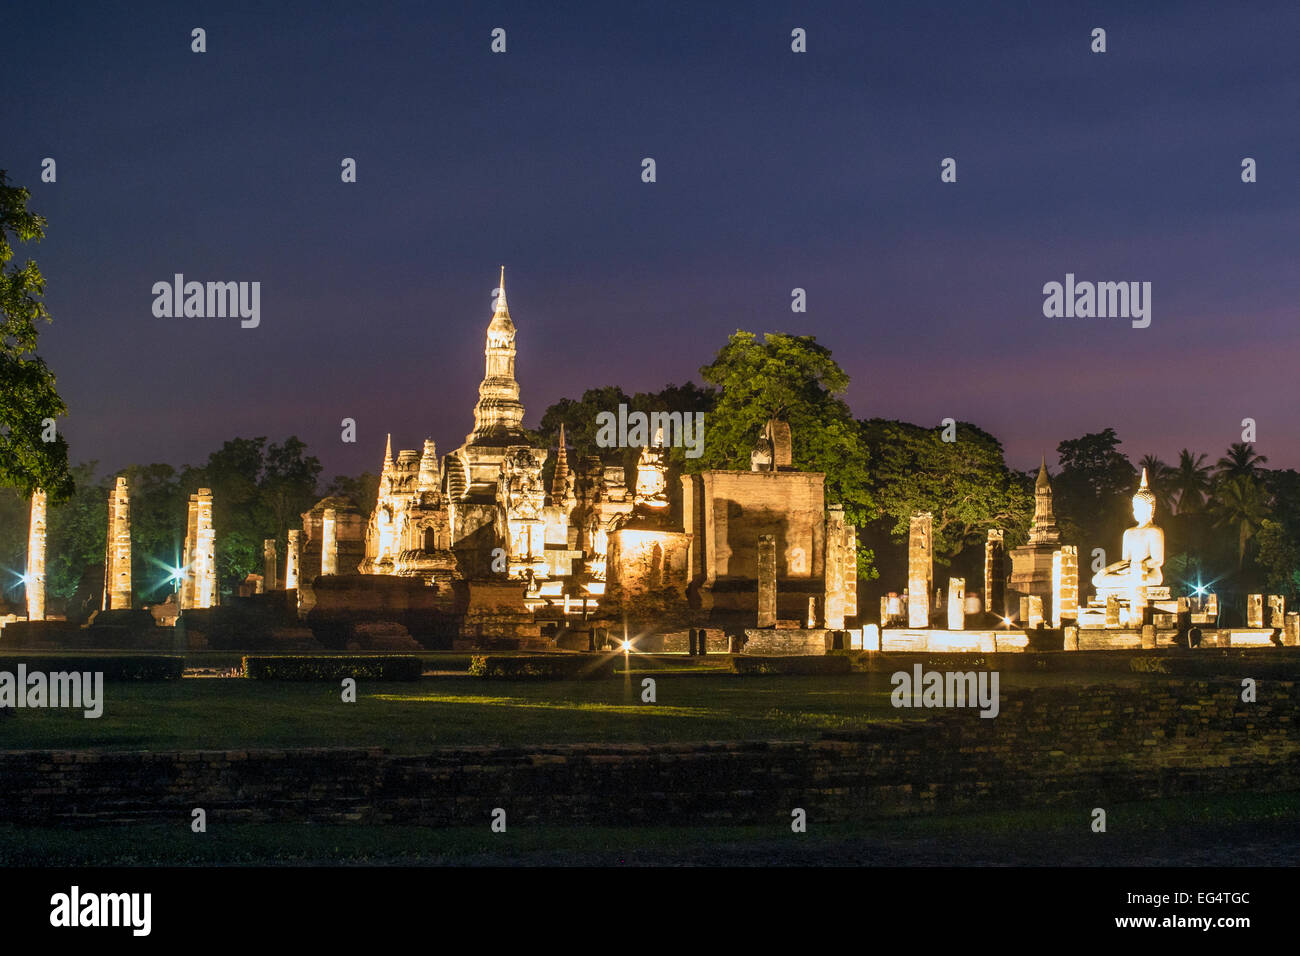 L'Asie. La Thaïlande, l'ancienne capitale du Siam. Parc archéologique de Sukhothai, classé au Patrimoine Mondial de l'UNESCO. Wat Mahathat par nuit. Banque D'Images